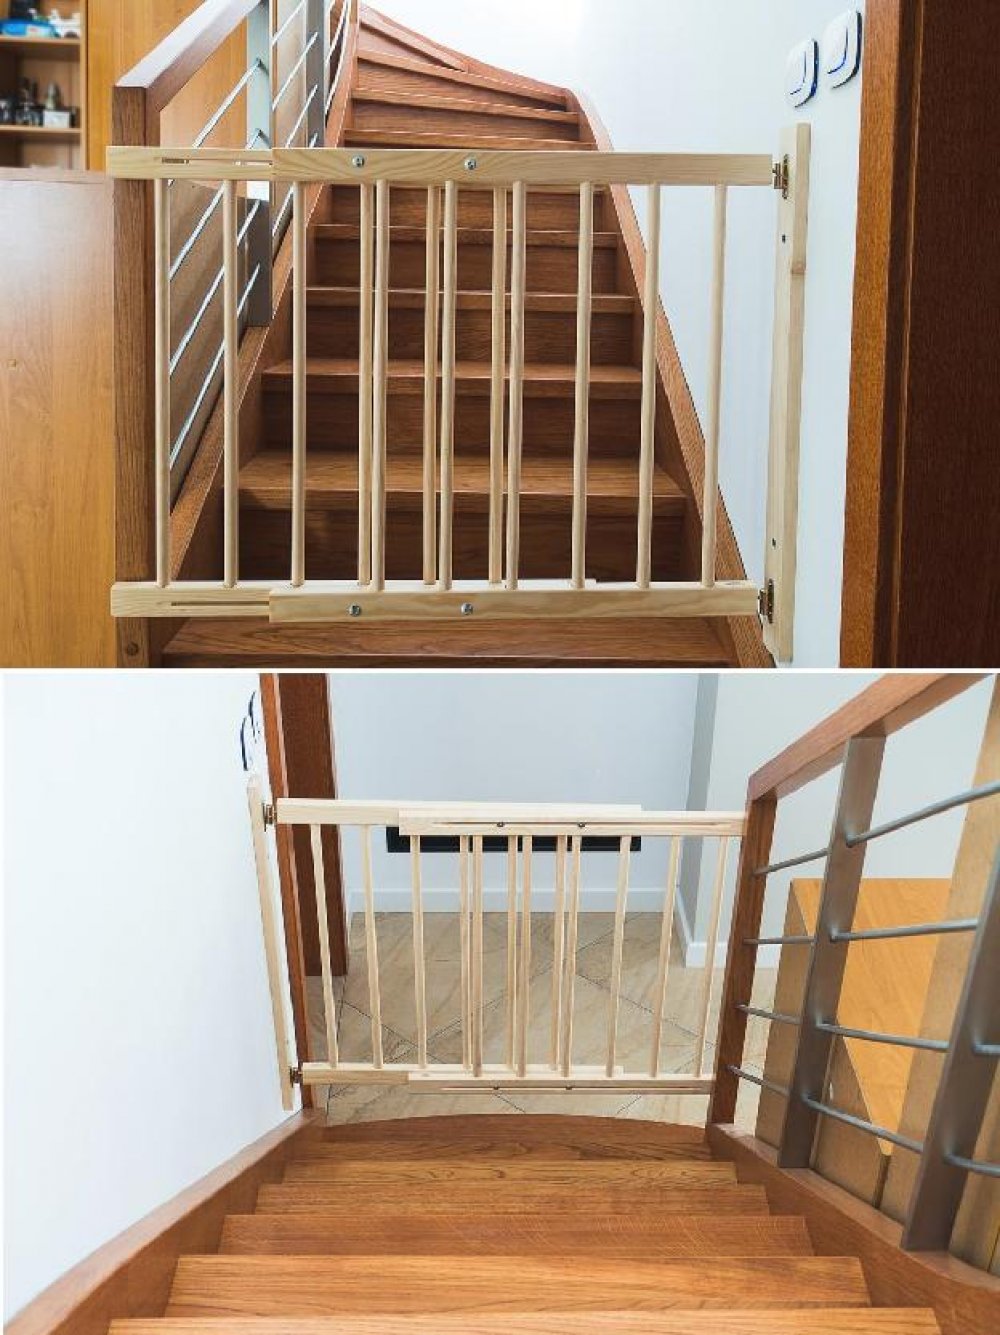 Bezpečnostní zábrana dveře - schody 72-122 cm, výška 74 cm